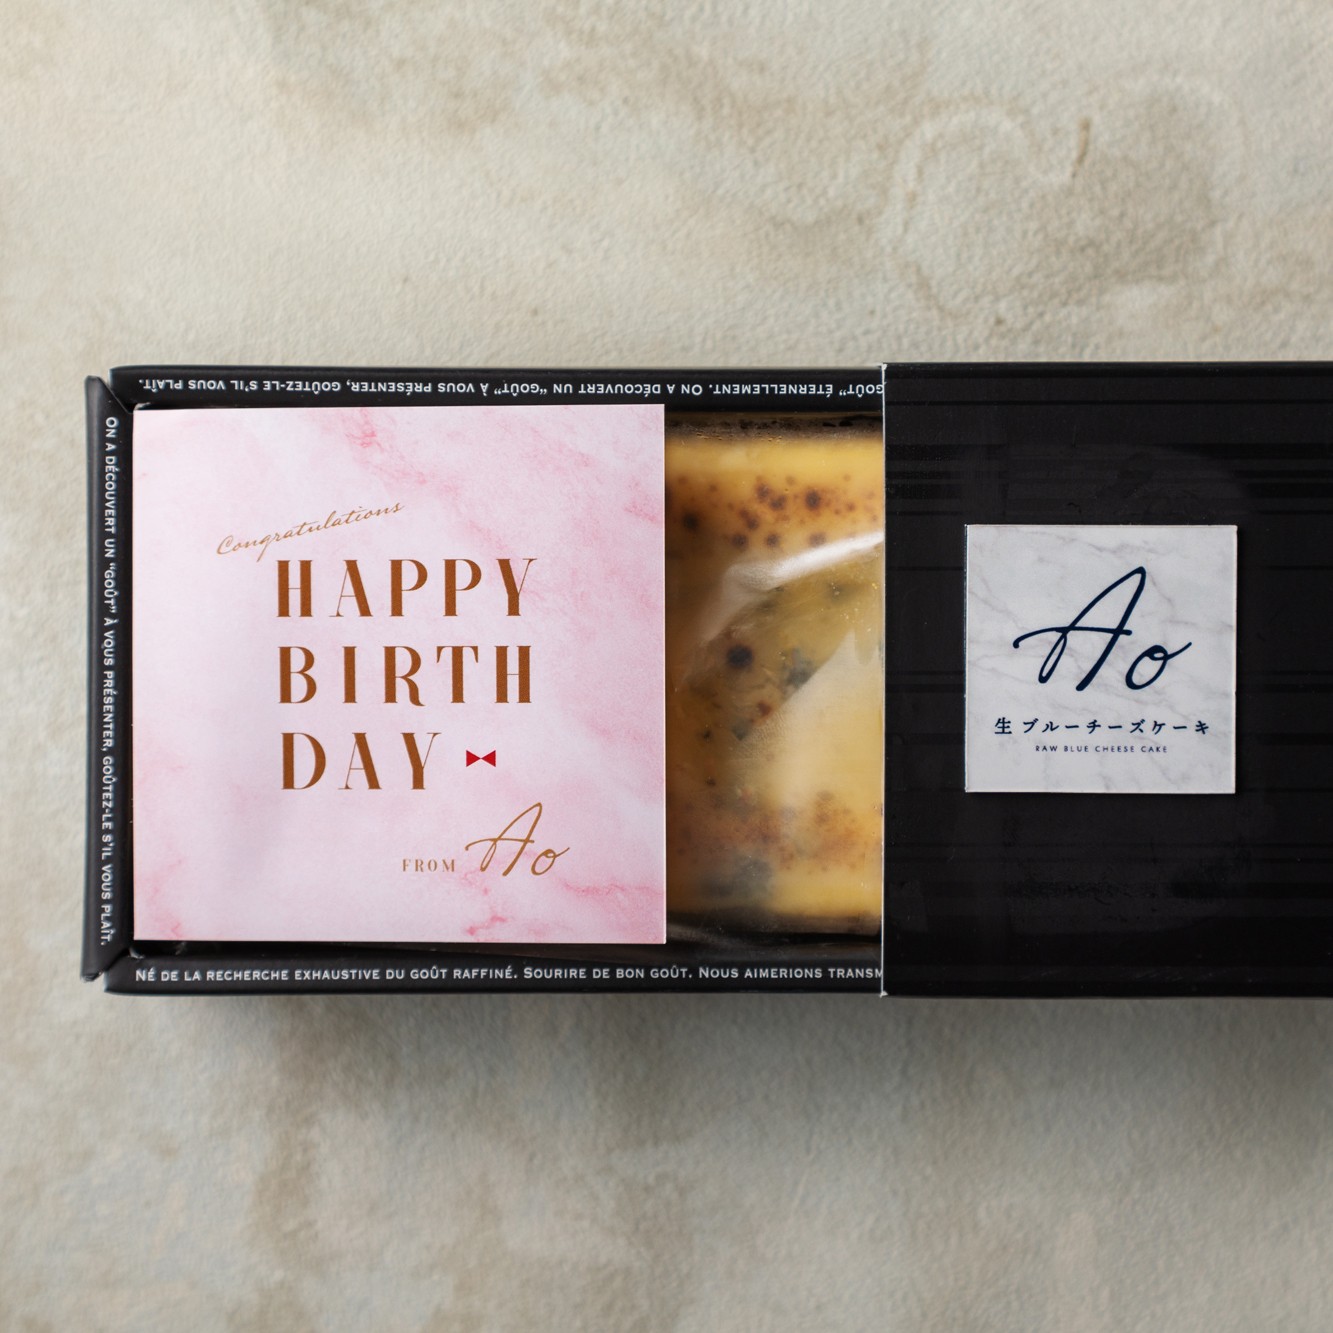 ブルーチーズケーキao ギフト プレゼント用メッセージカード オペレーションファクトリー